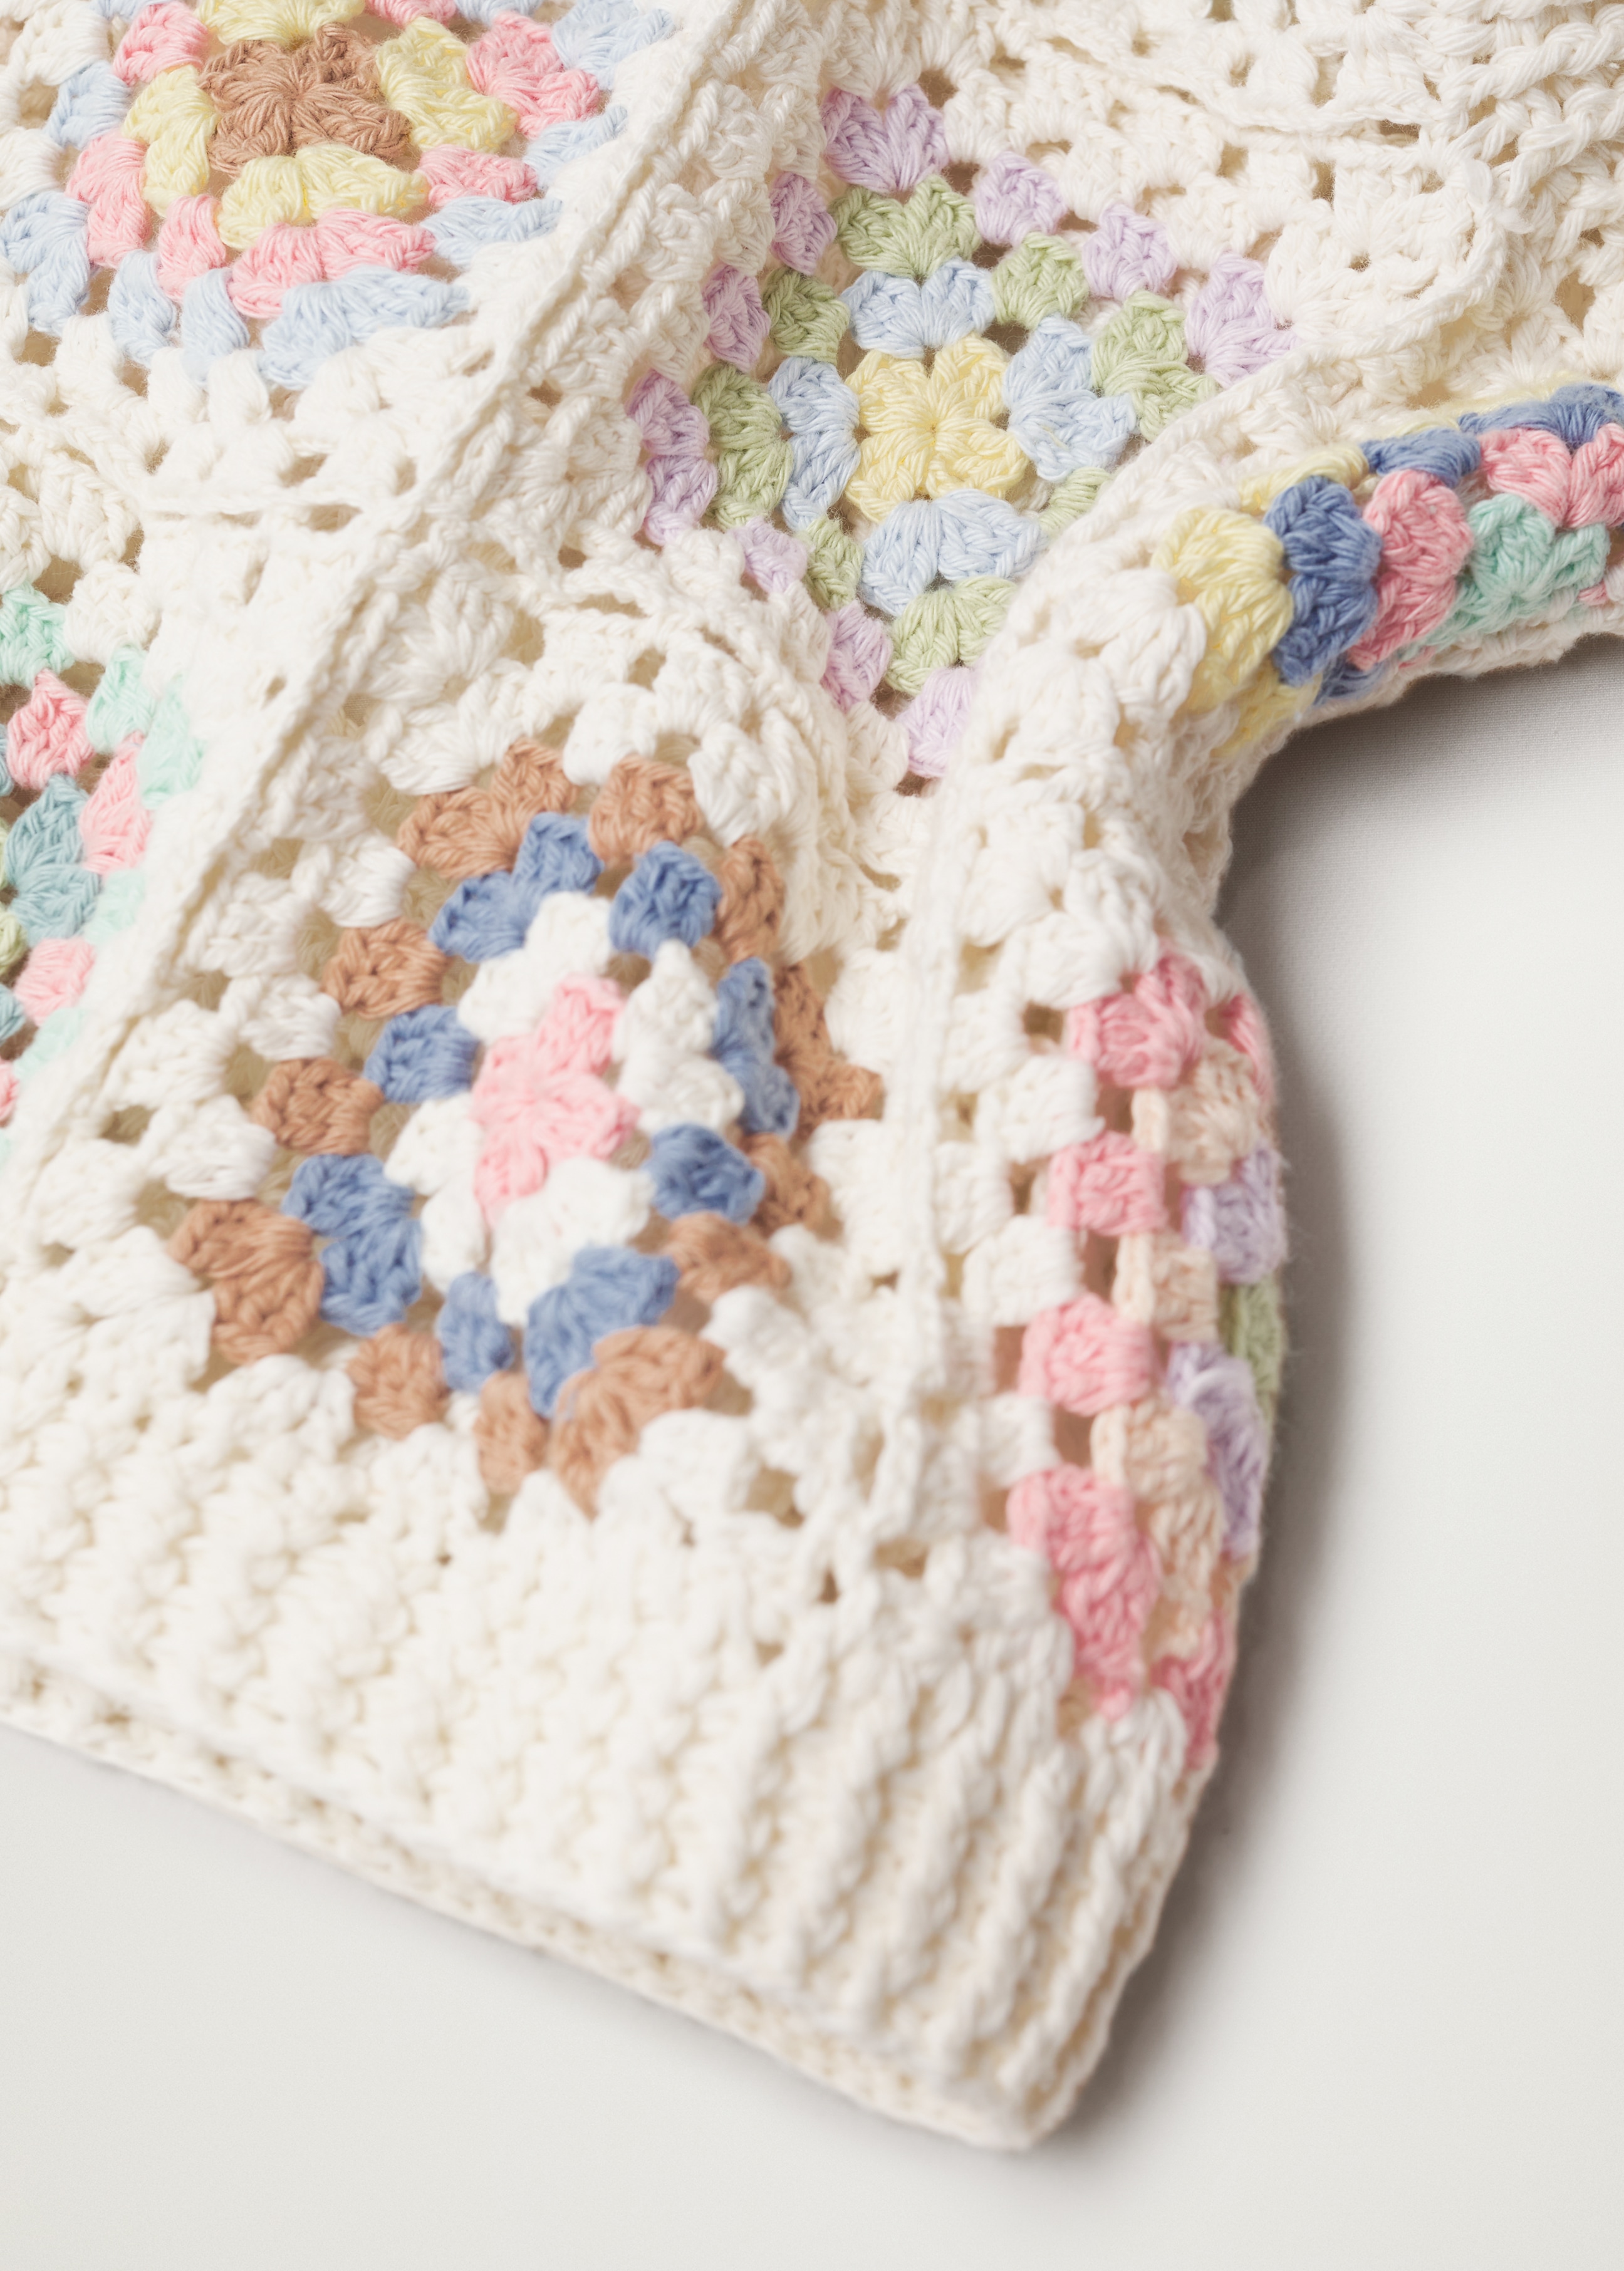 Handmade crochet crop top - Details of the article 8